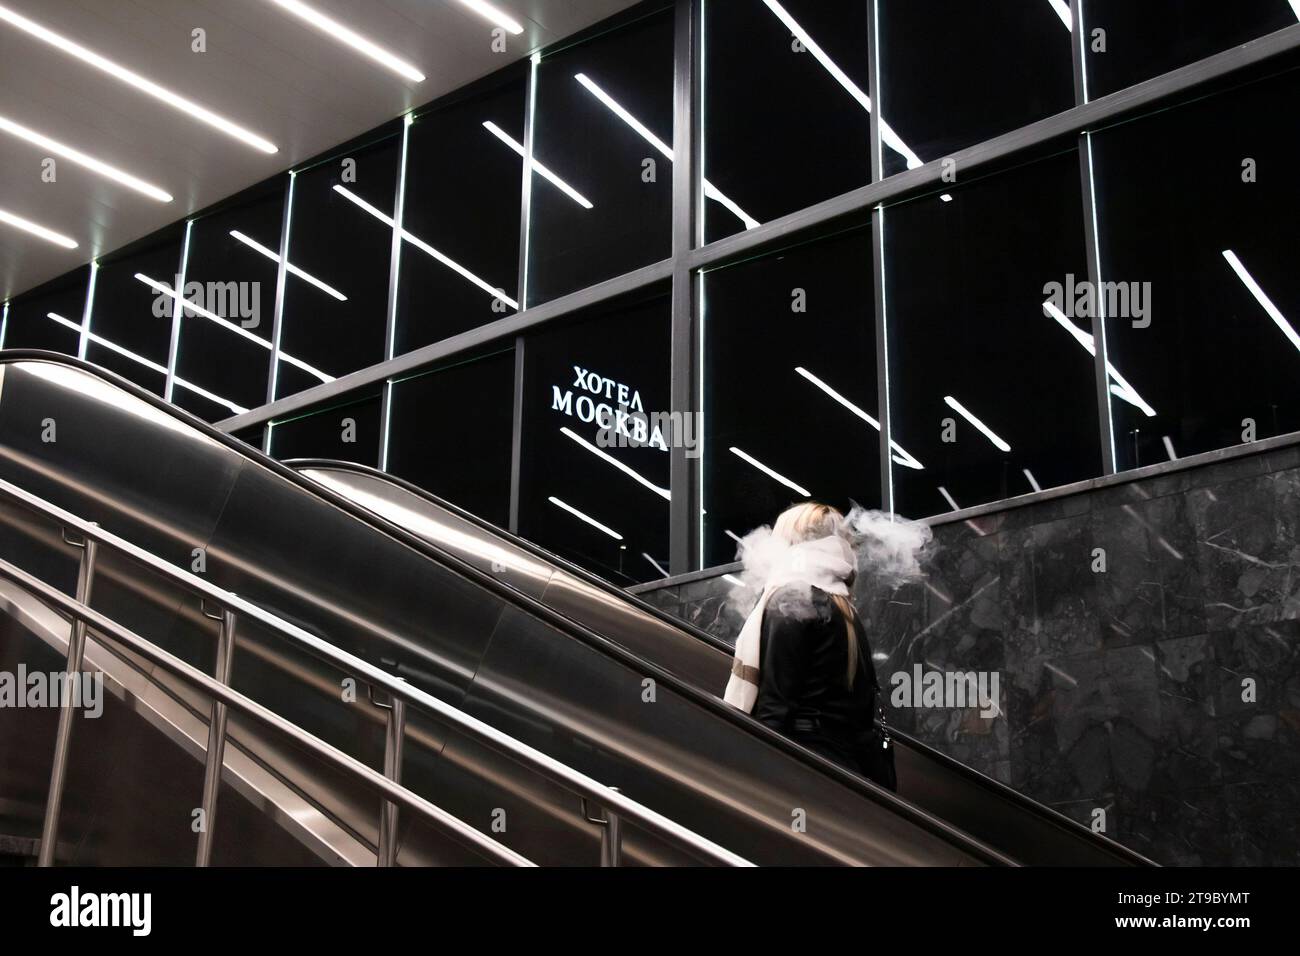 Belgrado, Serbia - 20 de noviembre de 2023: Persona subiendo por la escalera mecánica del metro, con luces interiores reflejando y el hotel Moscú firma en la fuente cirílica Foto de stock